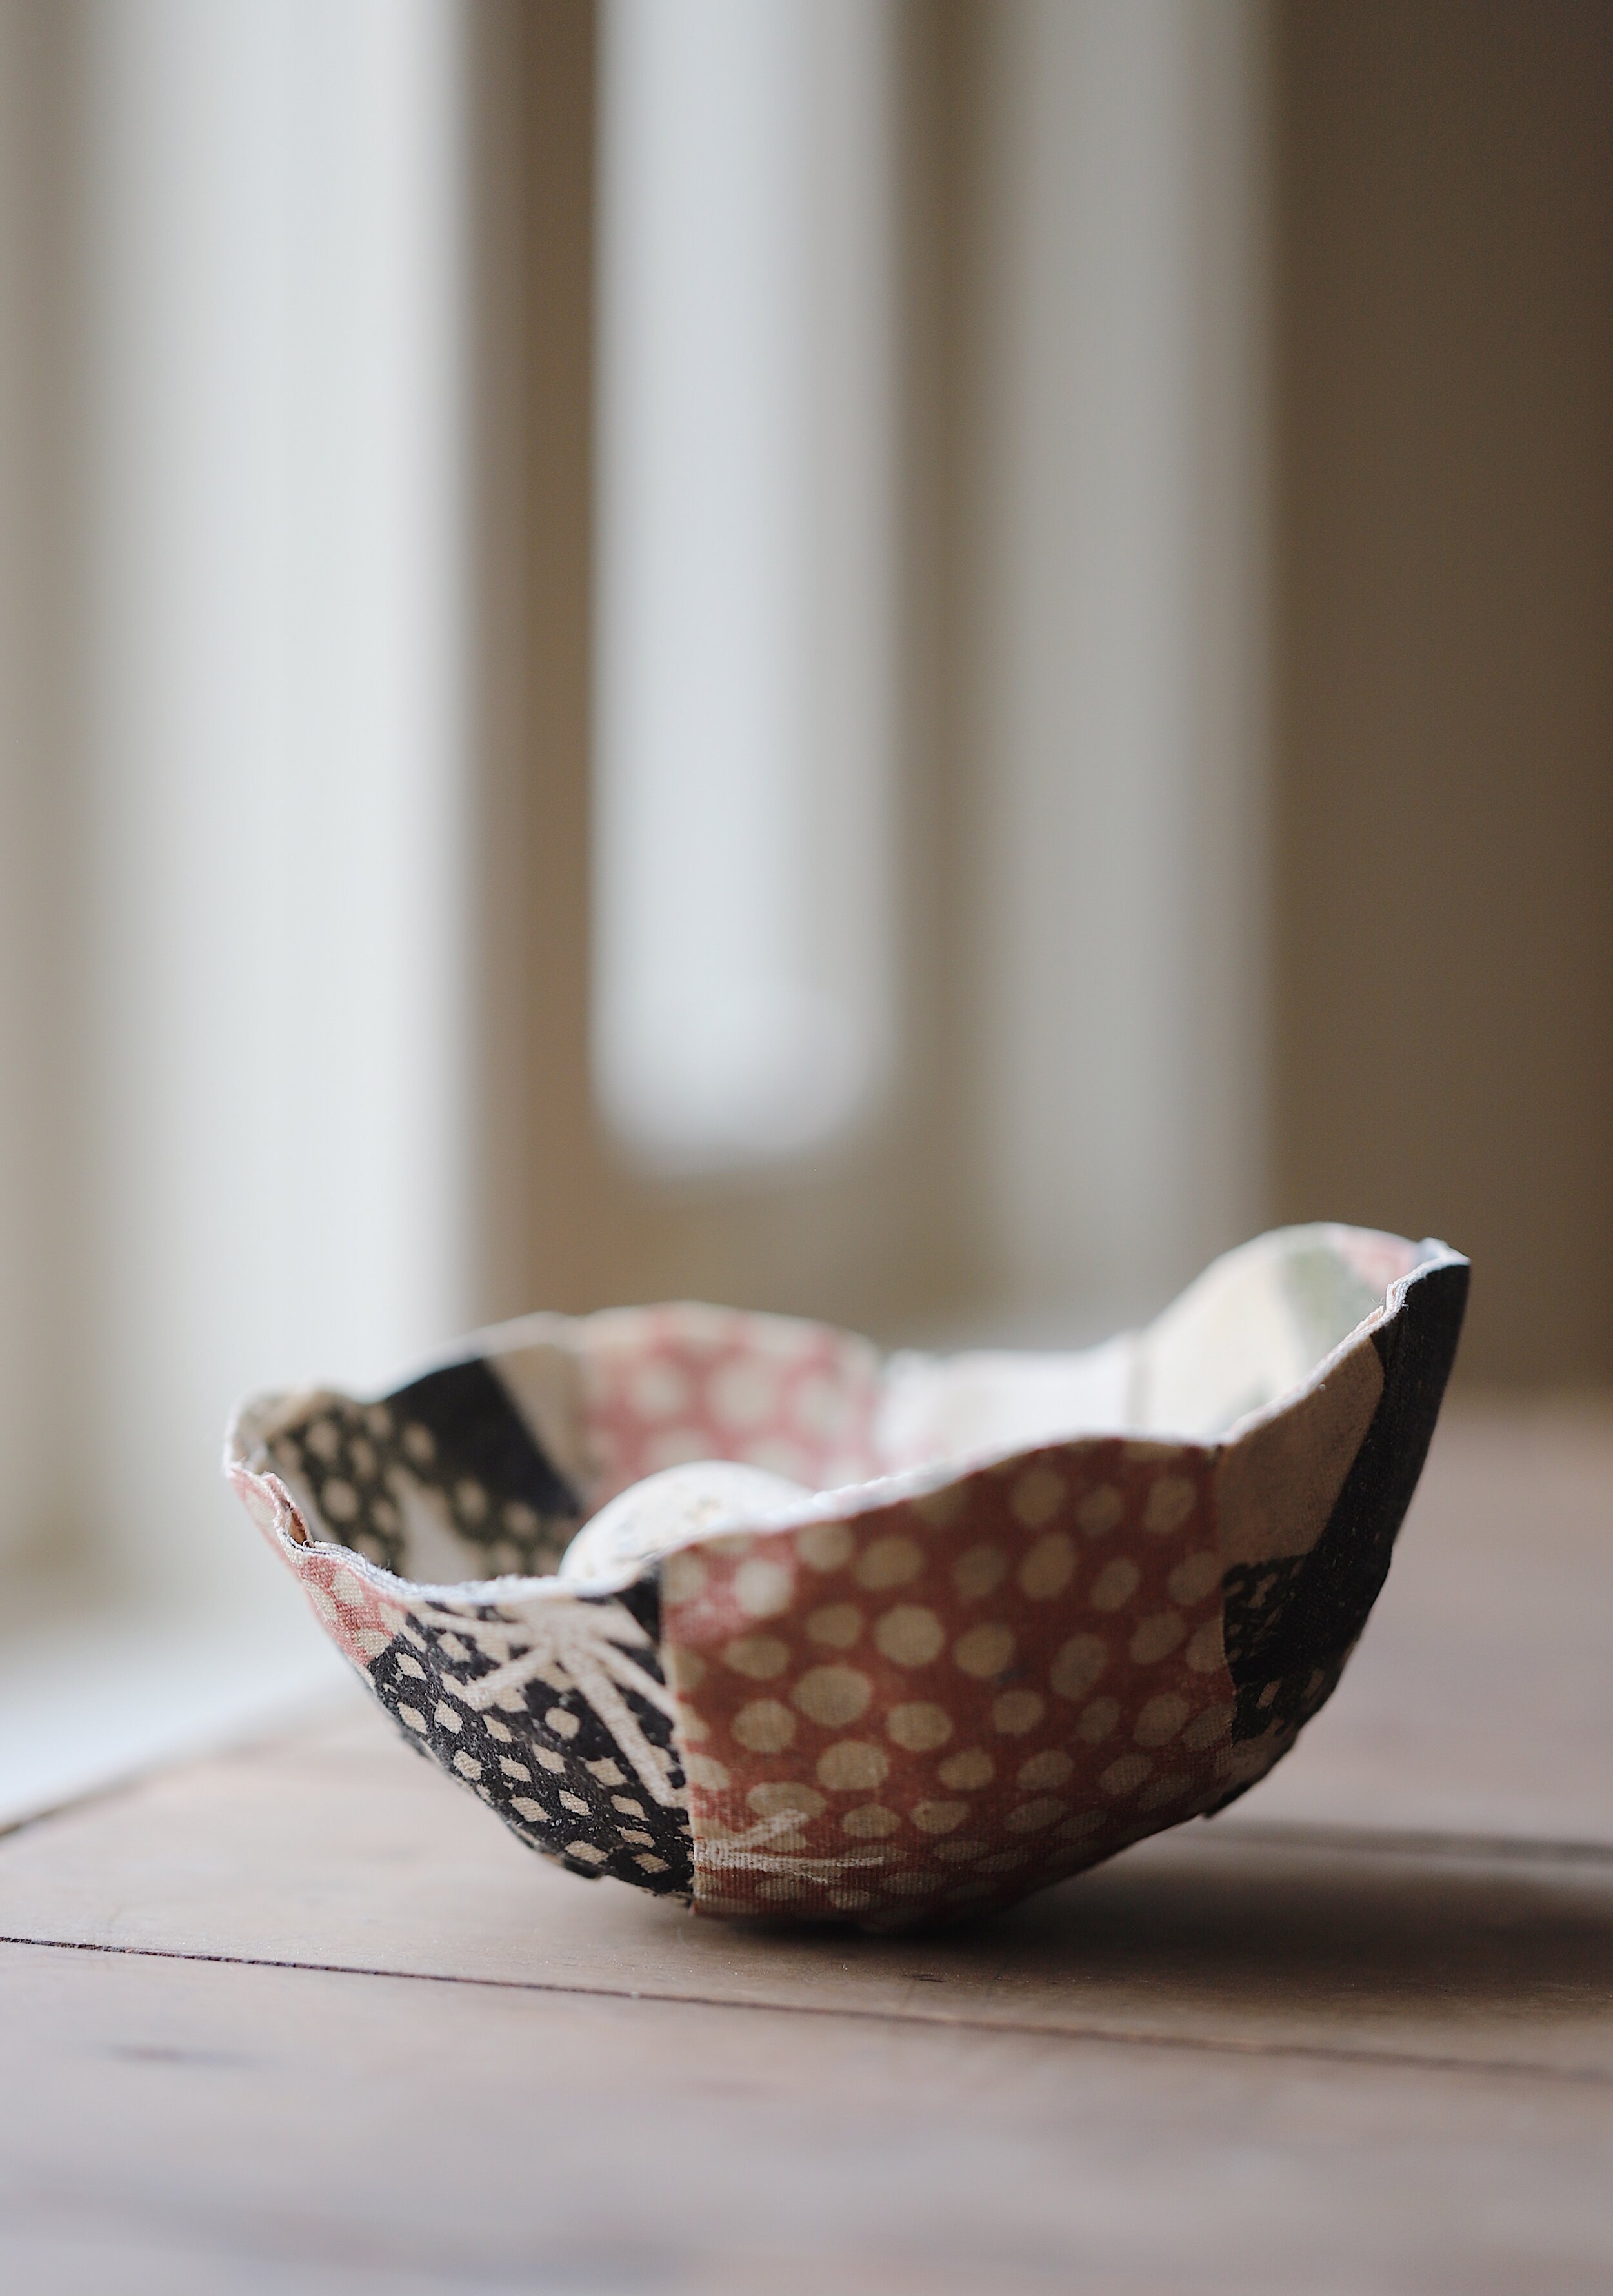 Fabric Scrap Mâché Bowls — simply living well